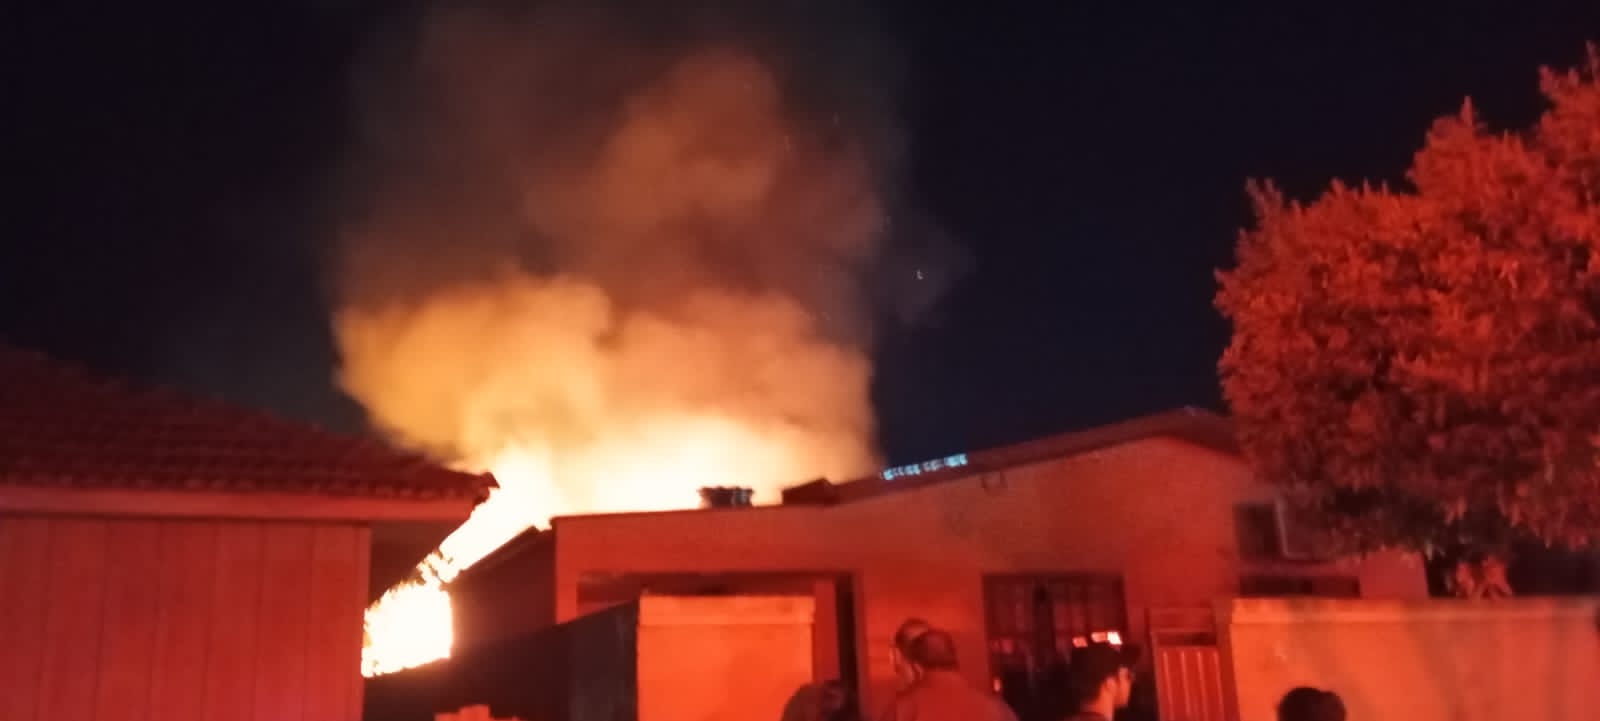 Incêndio durante a noite destrói casa de madeira e assusta moradores